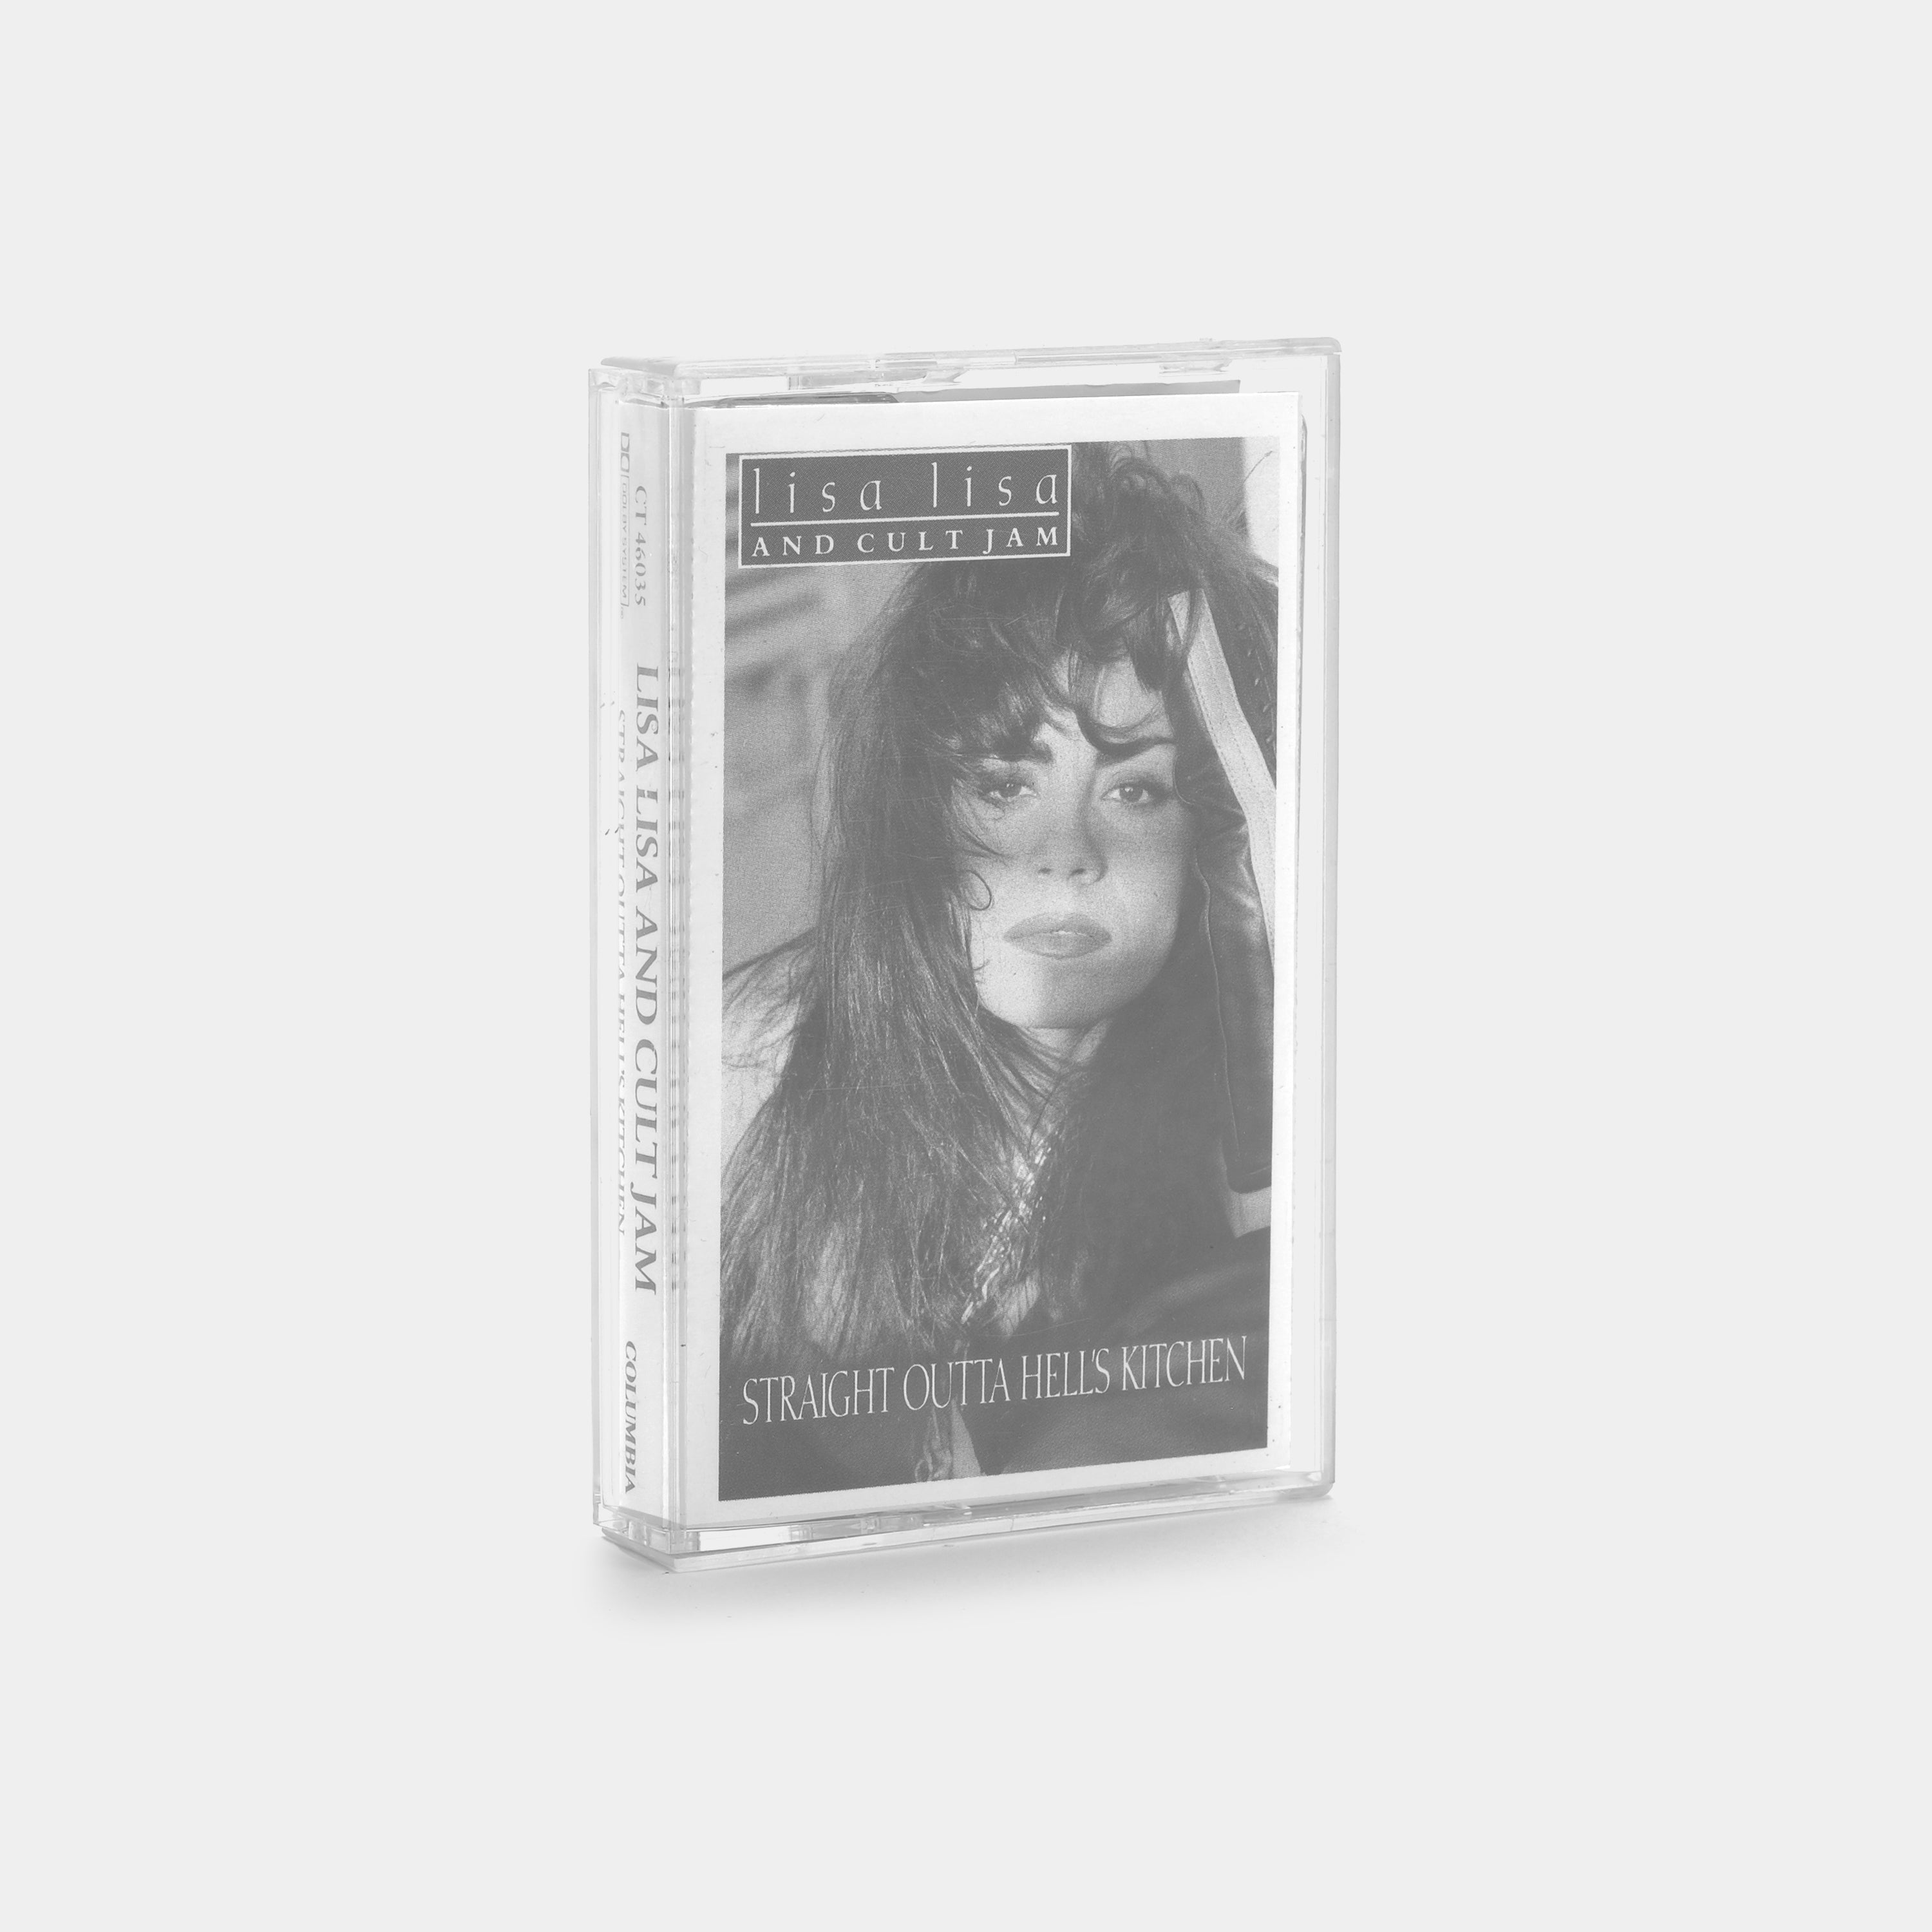 Lisa Lisa & Cult Jam - Straight Outta Hell's Kitchen Cassette Tape